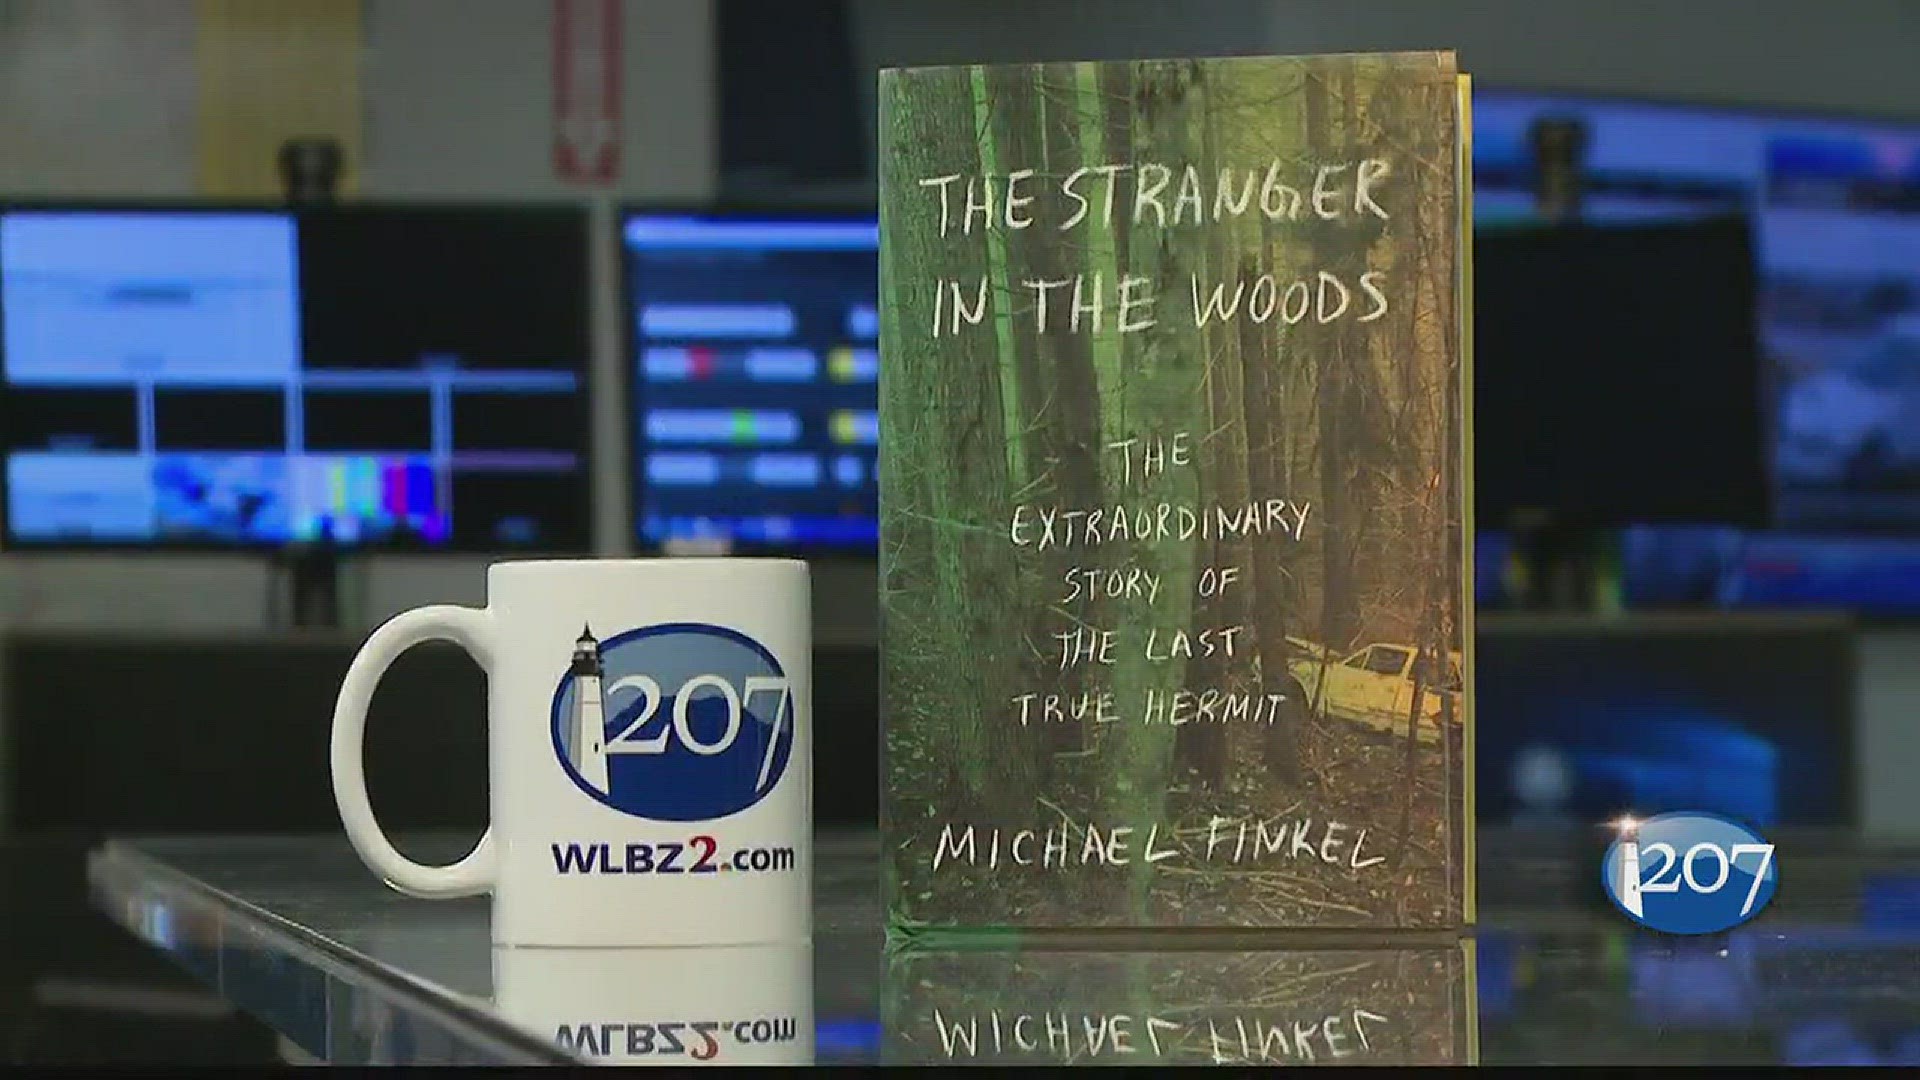 Michael Finkel - "The Stranger in the Woods"